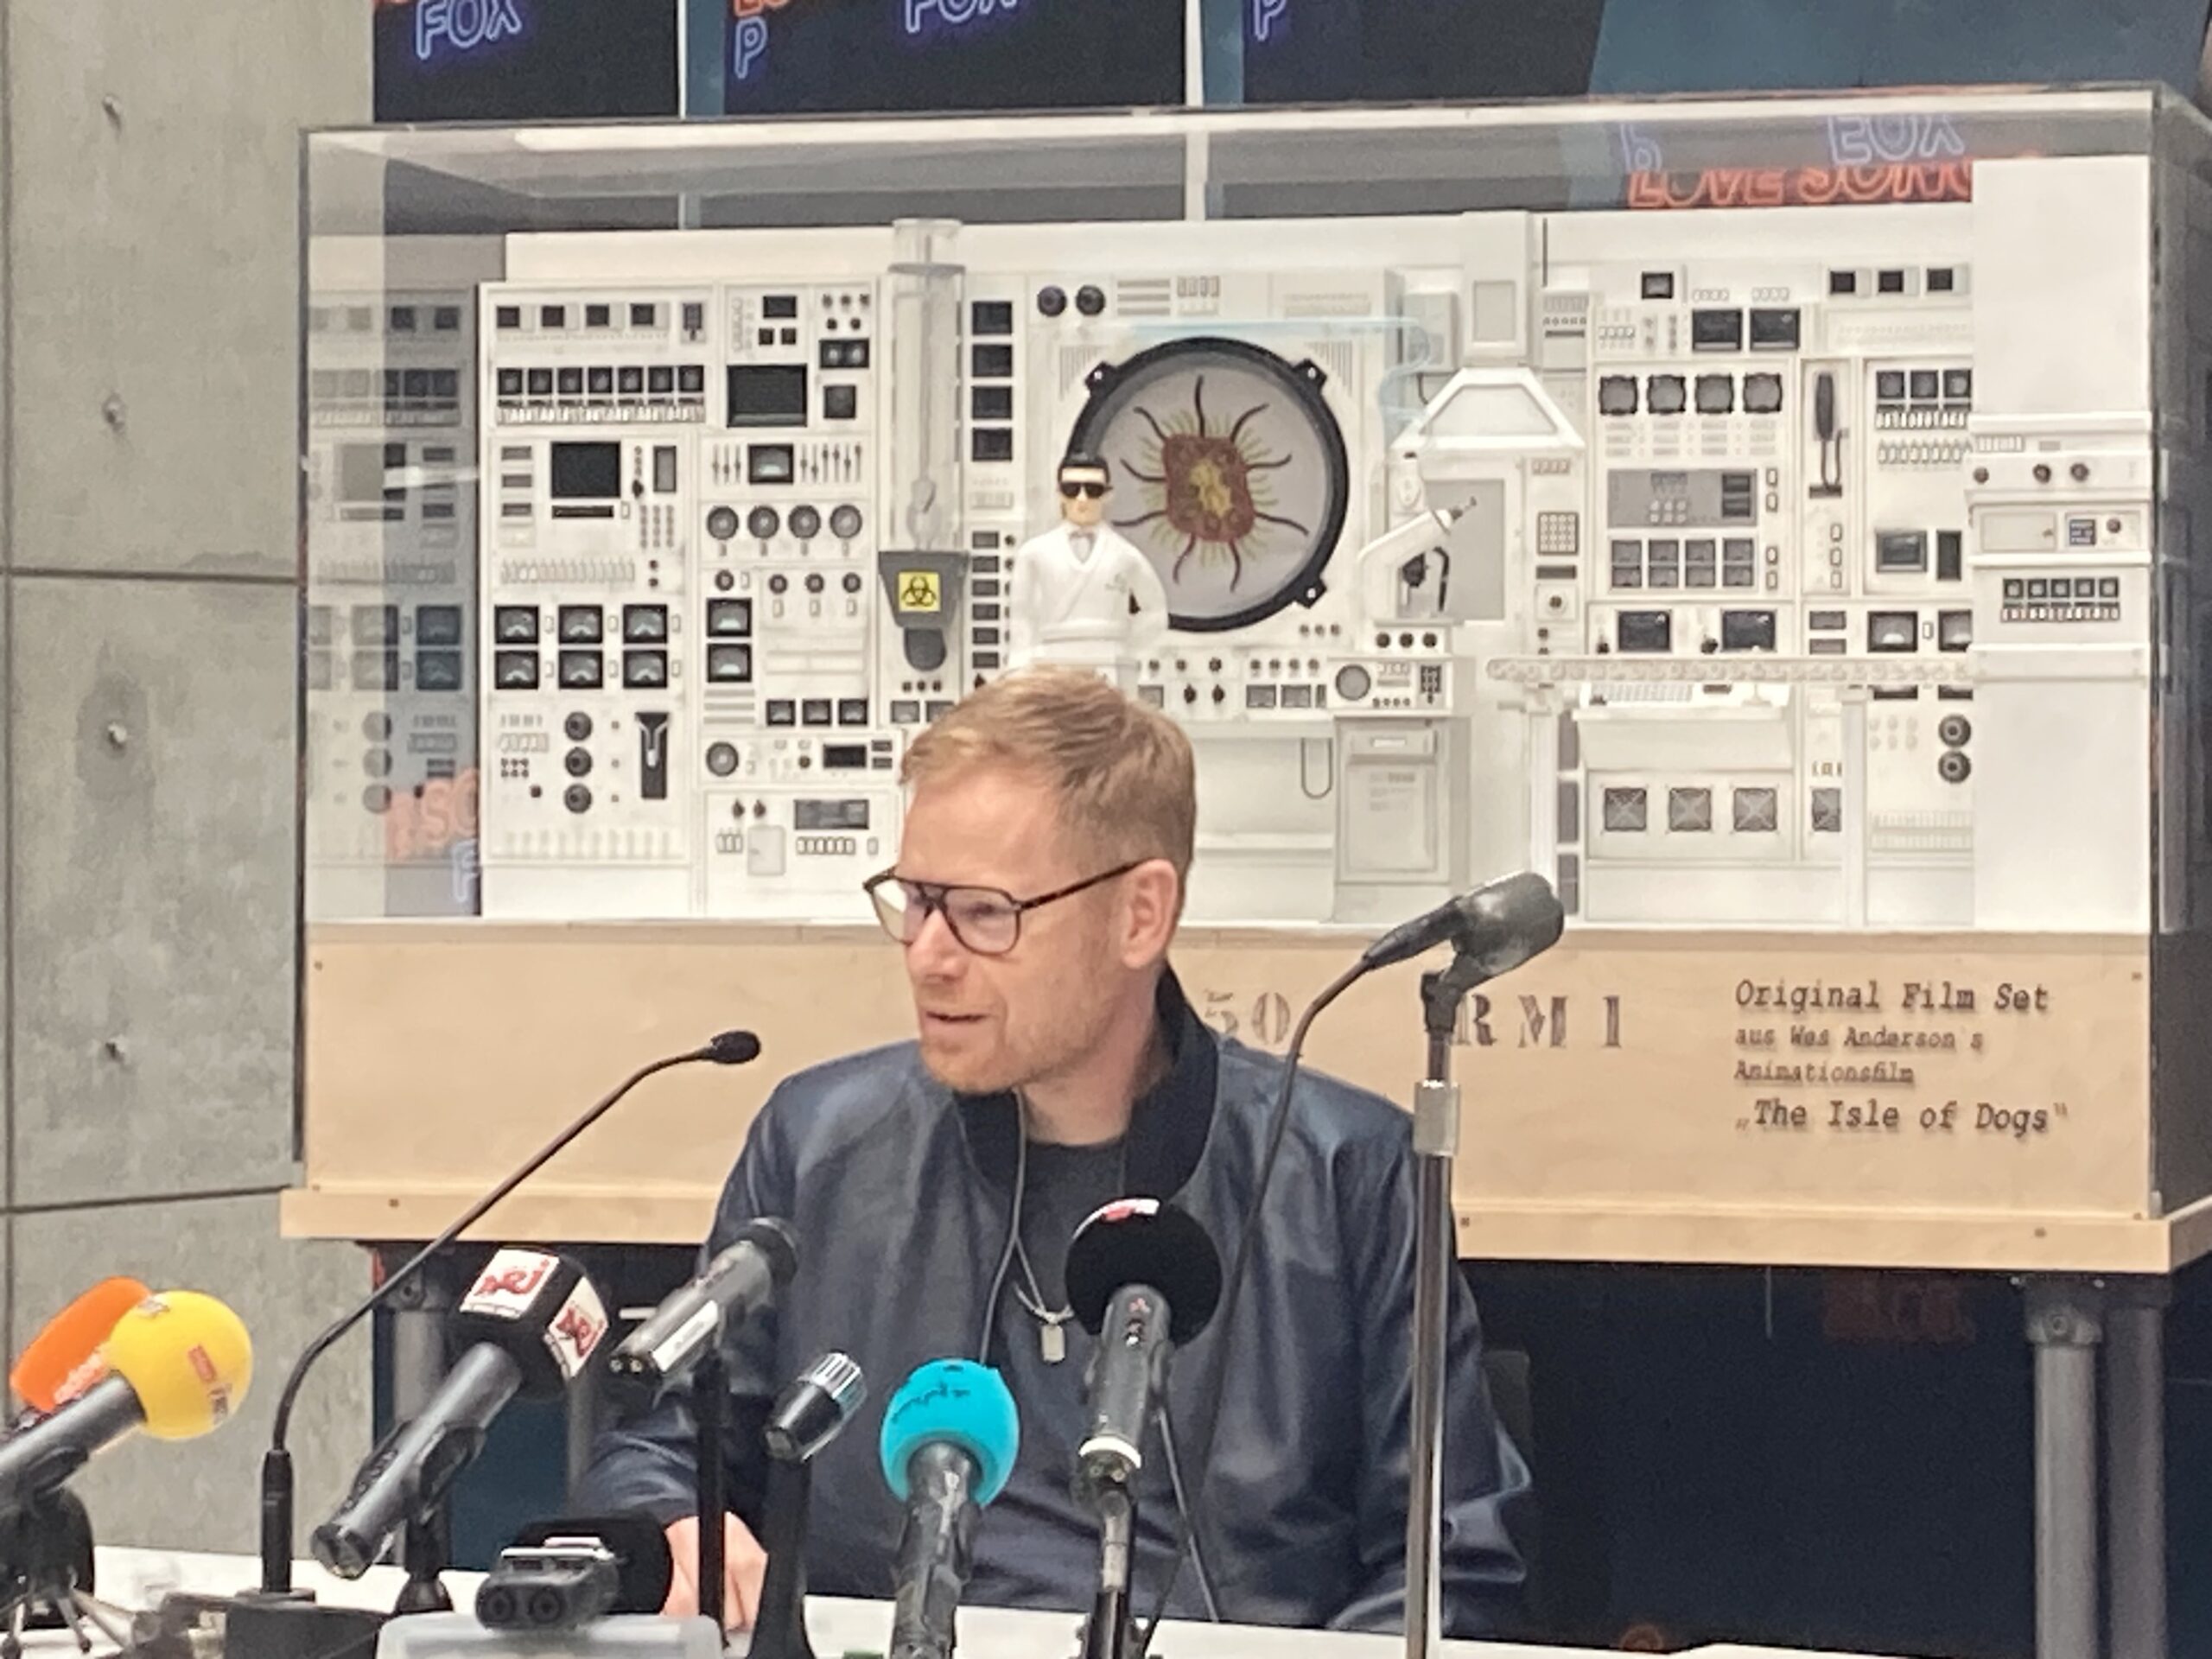 Peter Fox bei der Pressekonferenz zu seinem Album "Love Songs" im Studio Babelsberg, 23.5.2023. Foto: Jacek Slaski